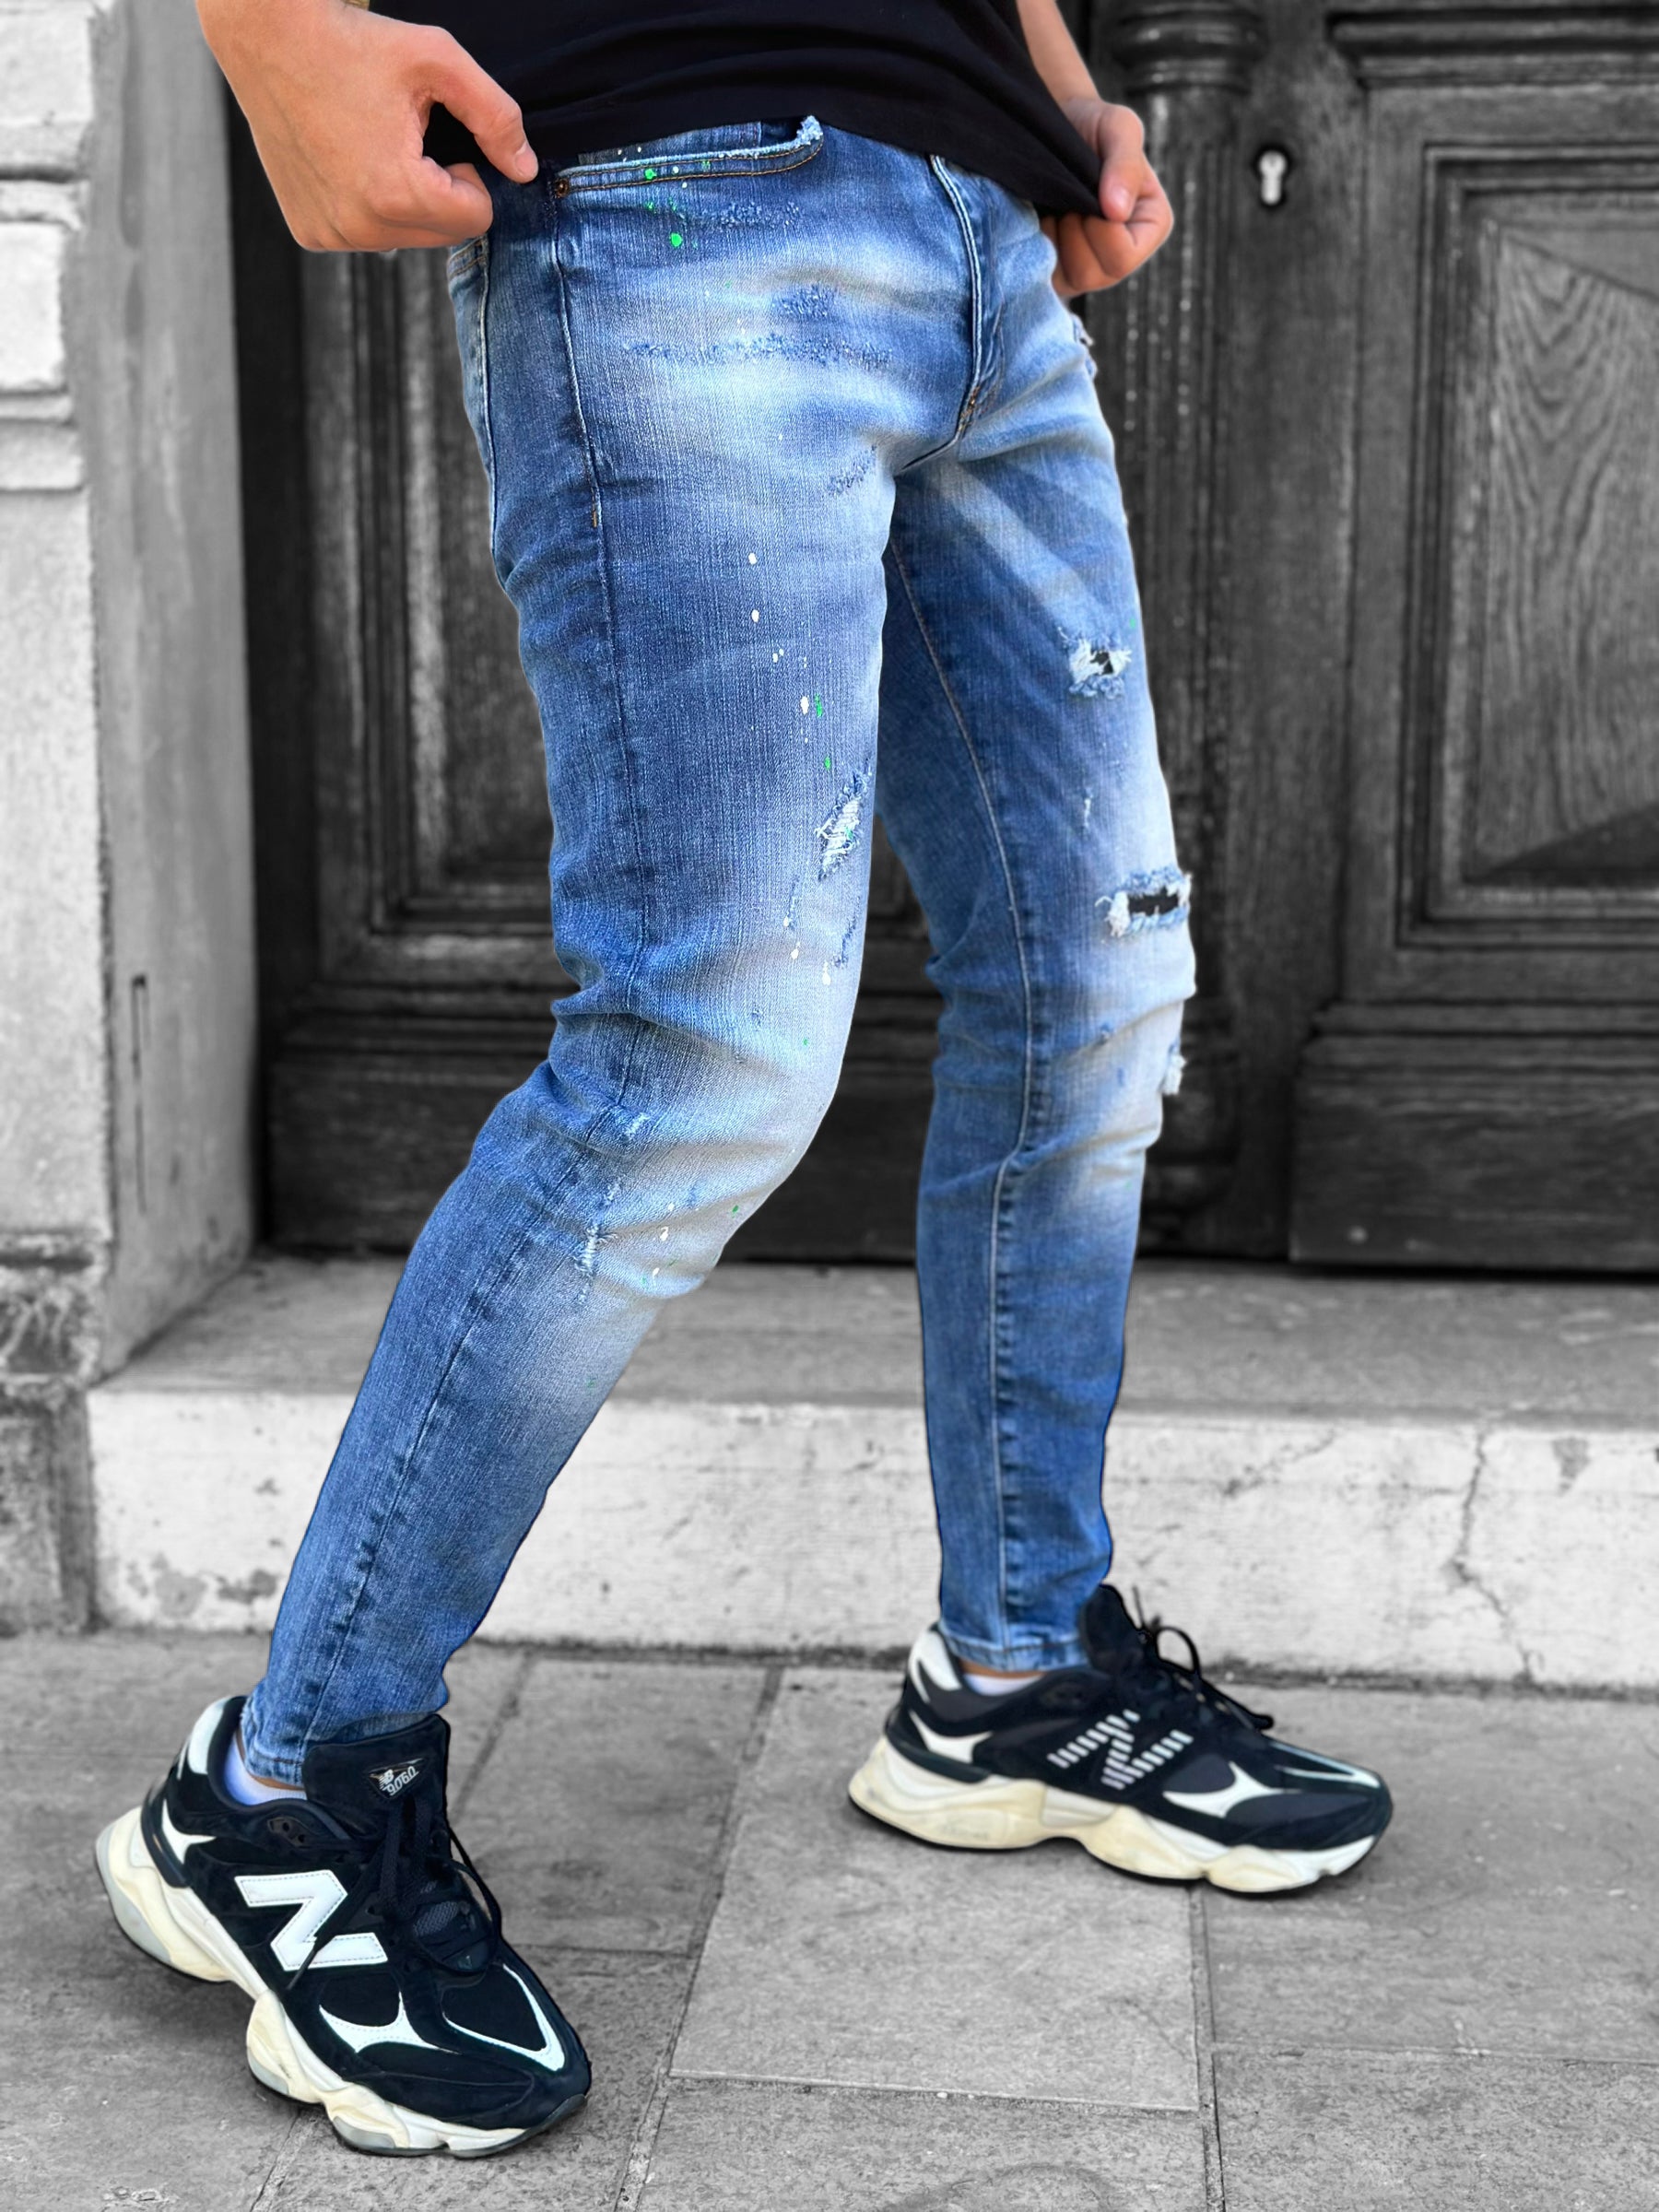 Destroyed blue jeans